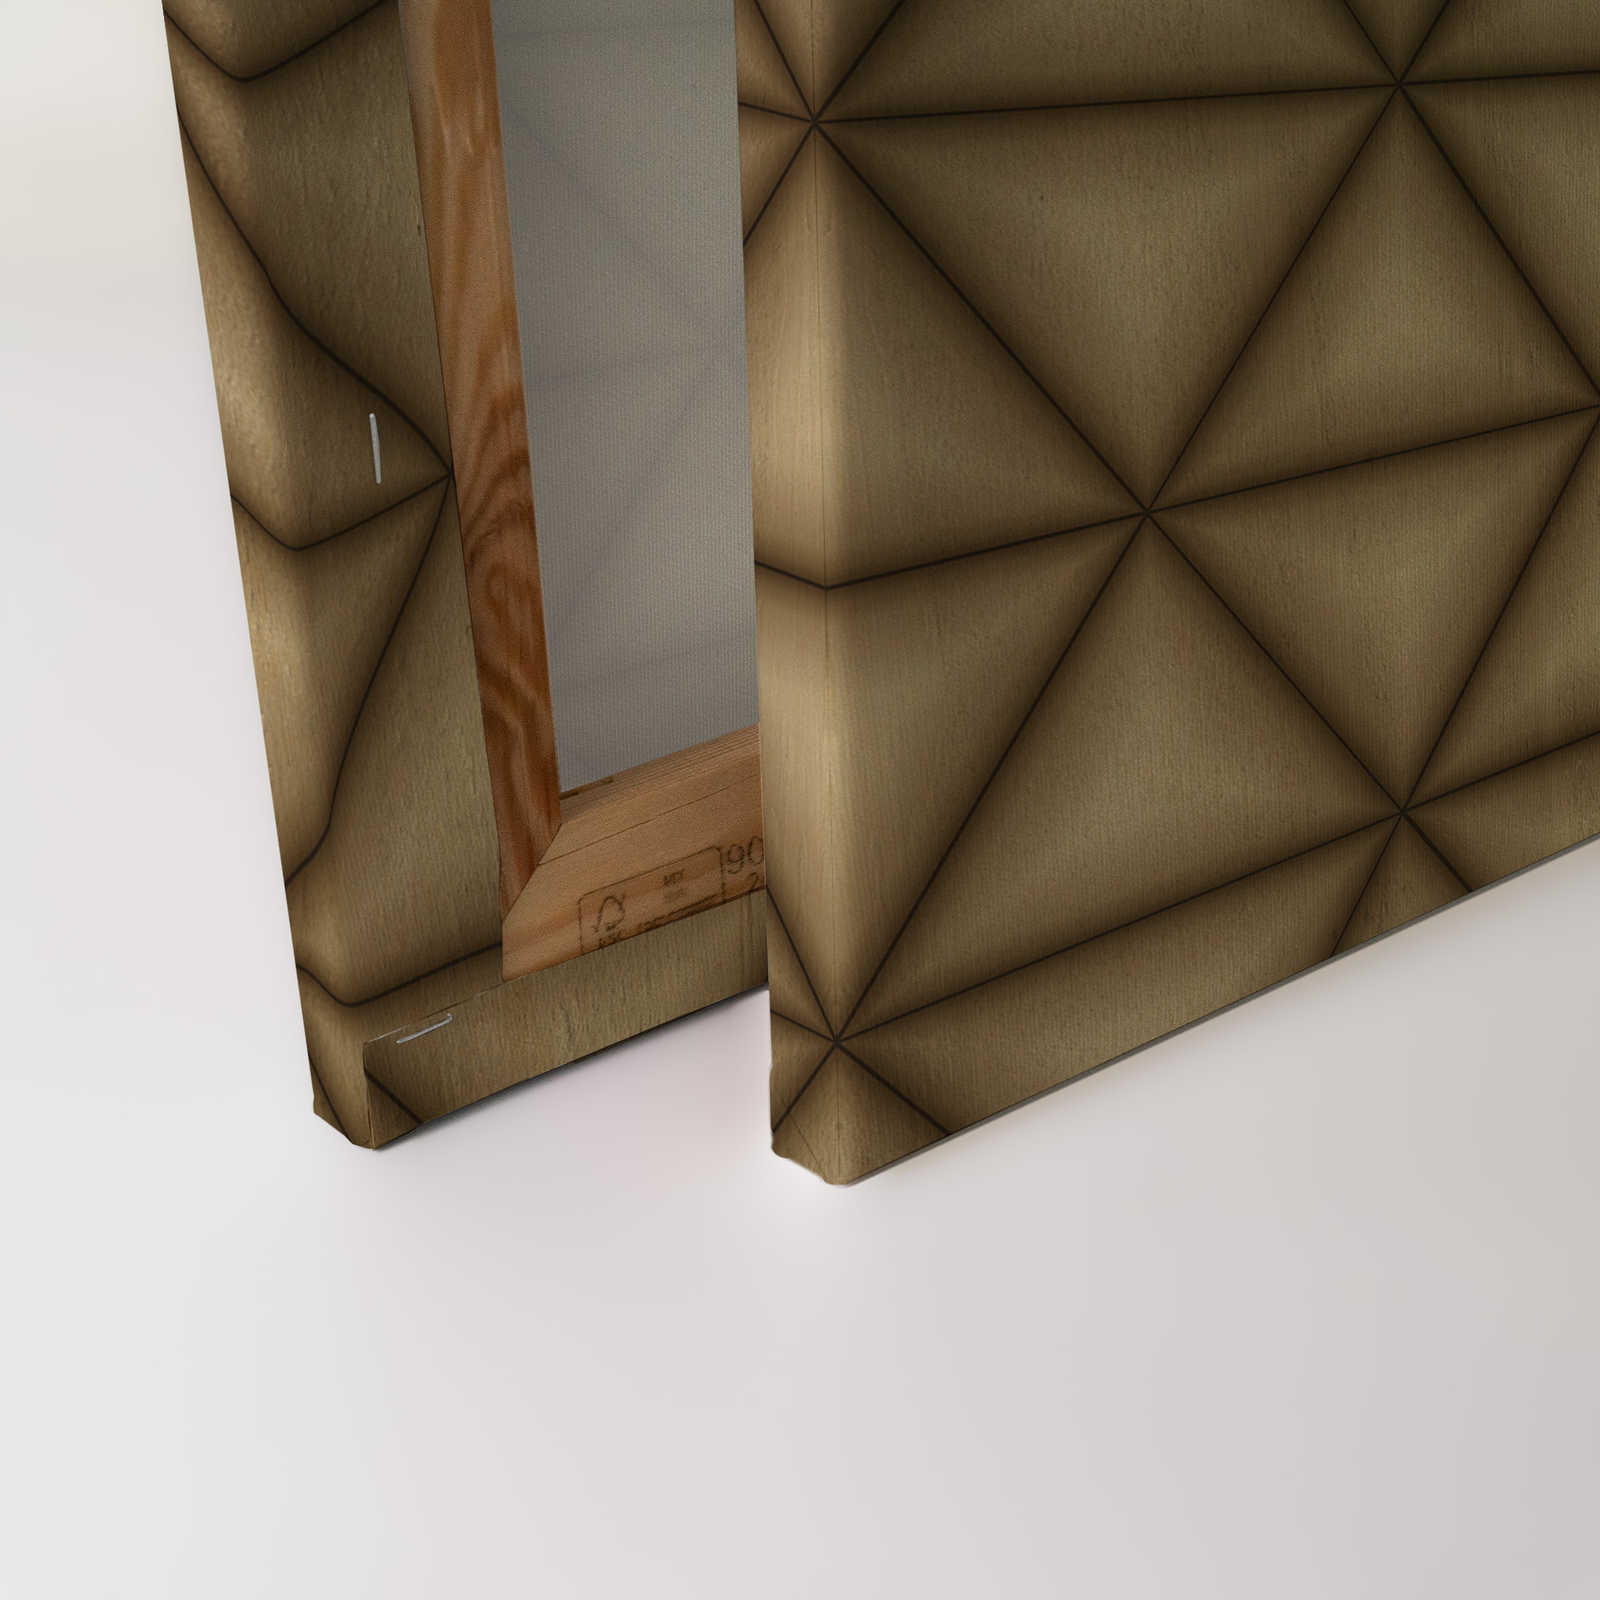             Leinwandbild geometrisches Dreiecks Muster in Holzoptik | braun, beige – 0,90 m x 0,60 m
        